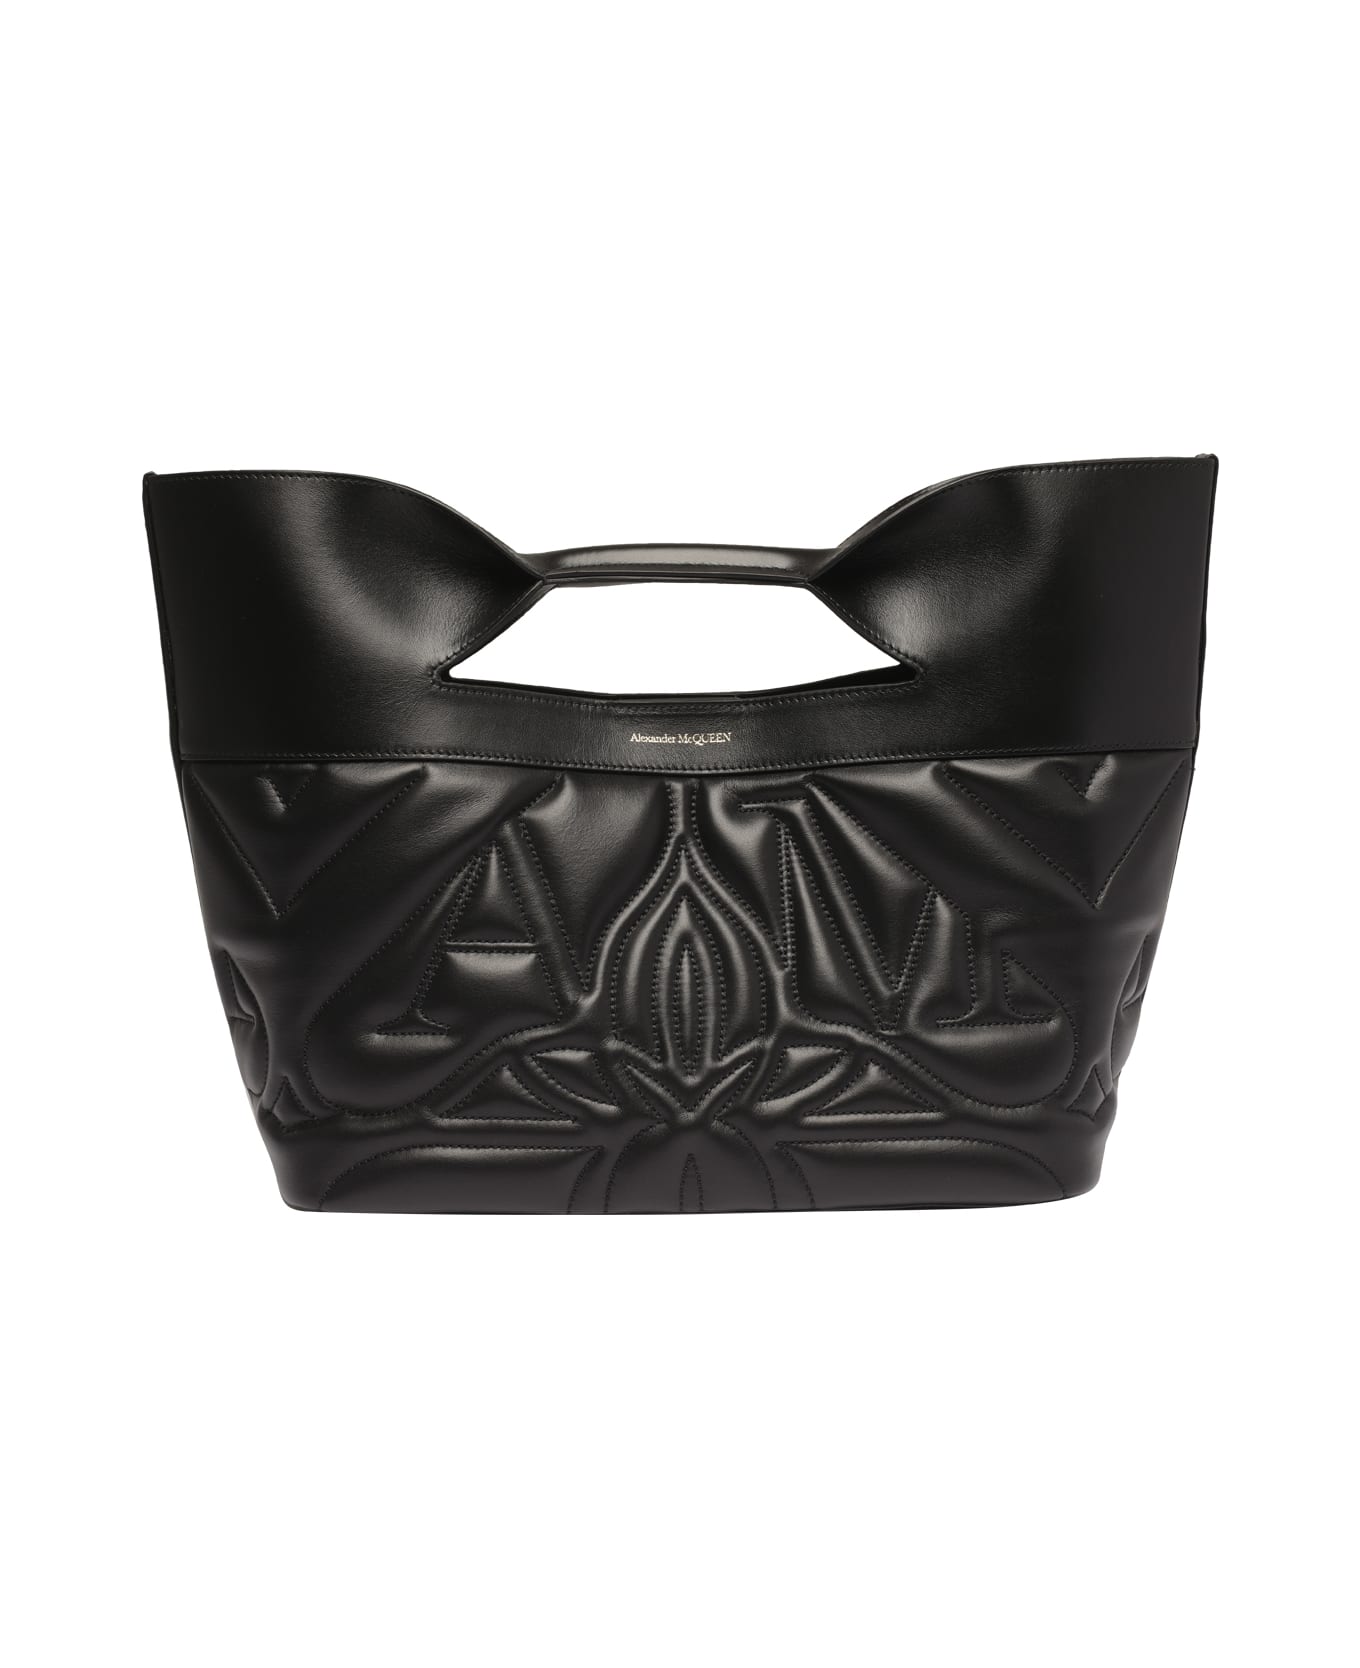 Alexander McQueen The Bow Handbag - Black